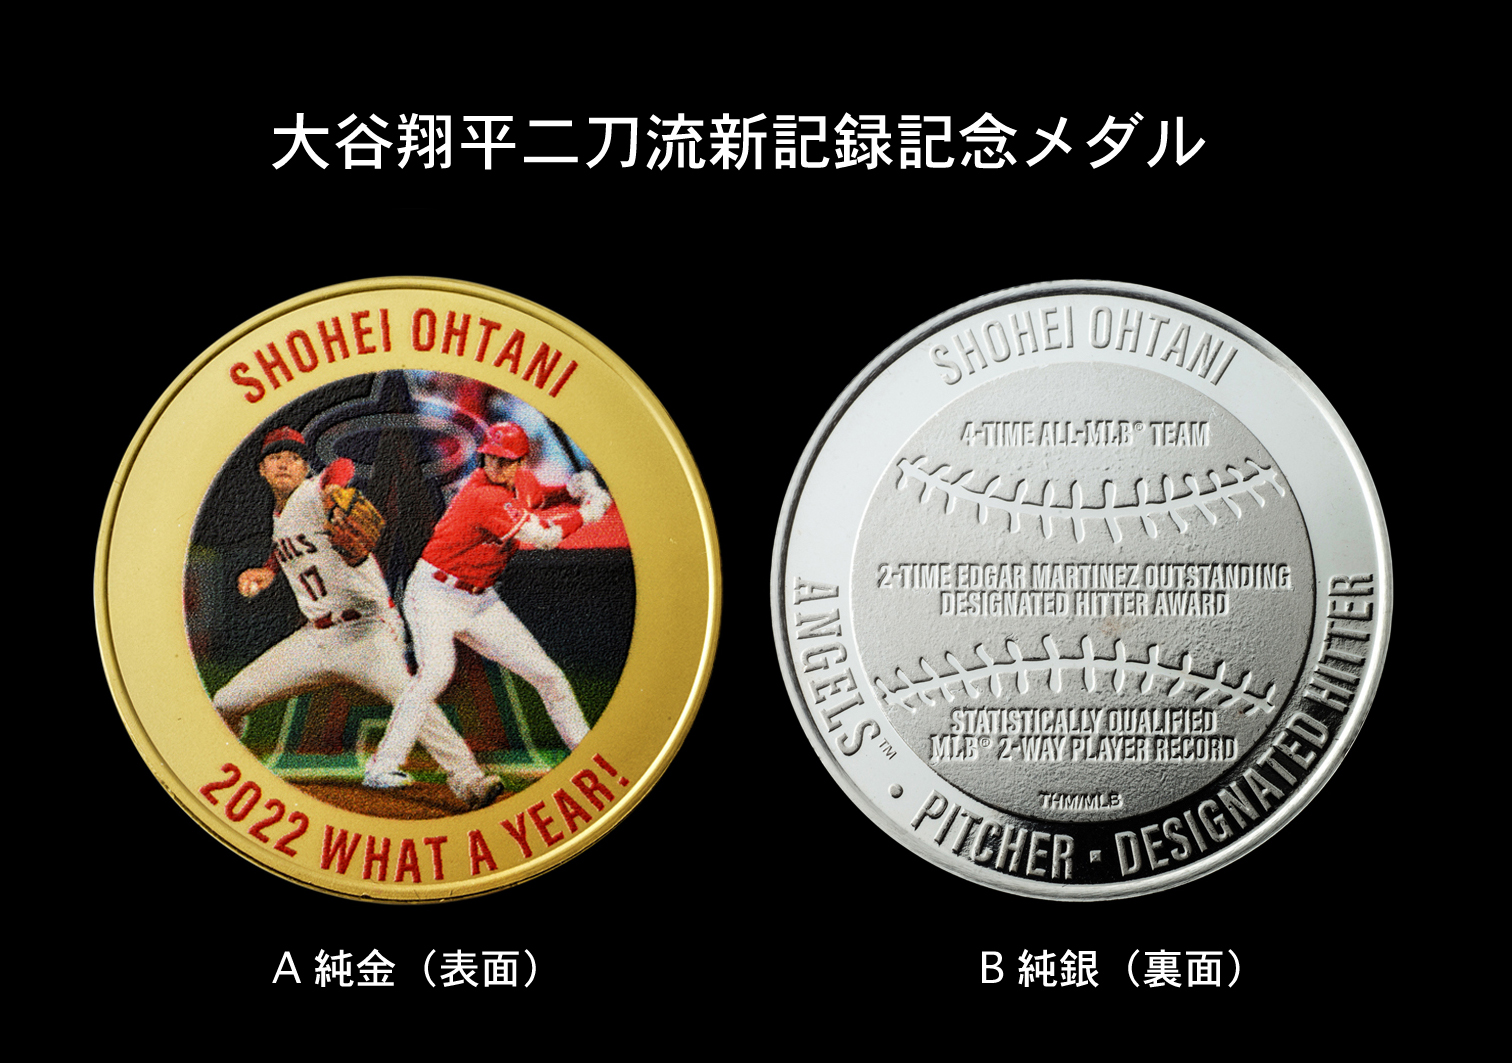 ベーブ・ルースの記録を更新した 大谷翔平二刀流新記録記念メダル